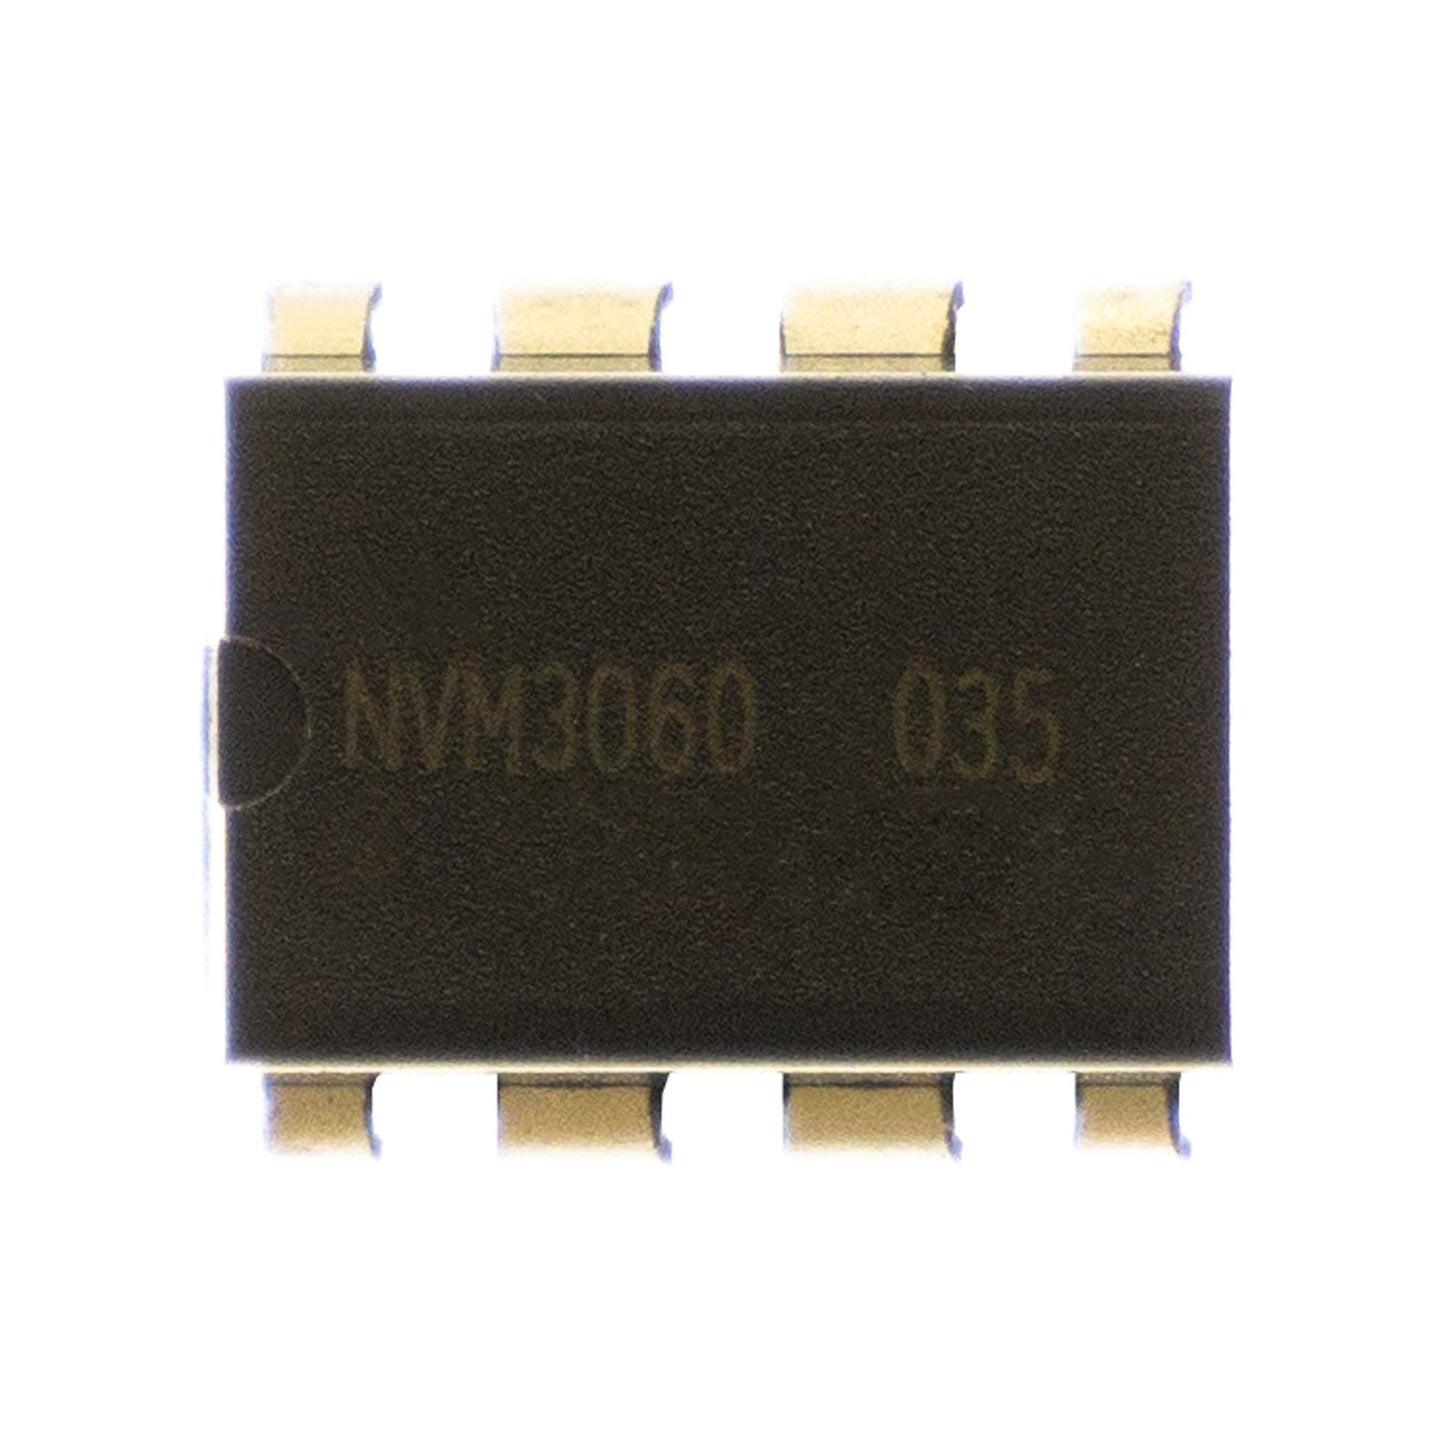 NVM3060-035 circuito integrato, transistor, componente elettronico, 8 contatti